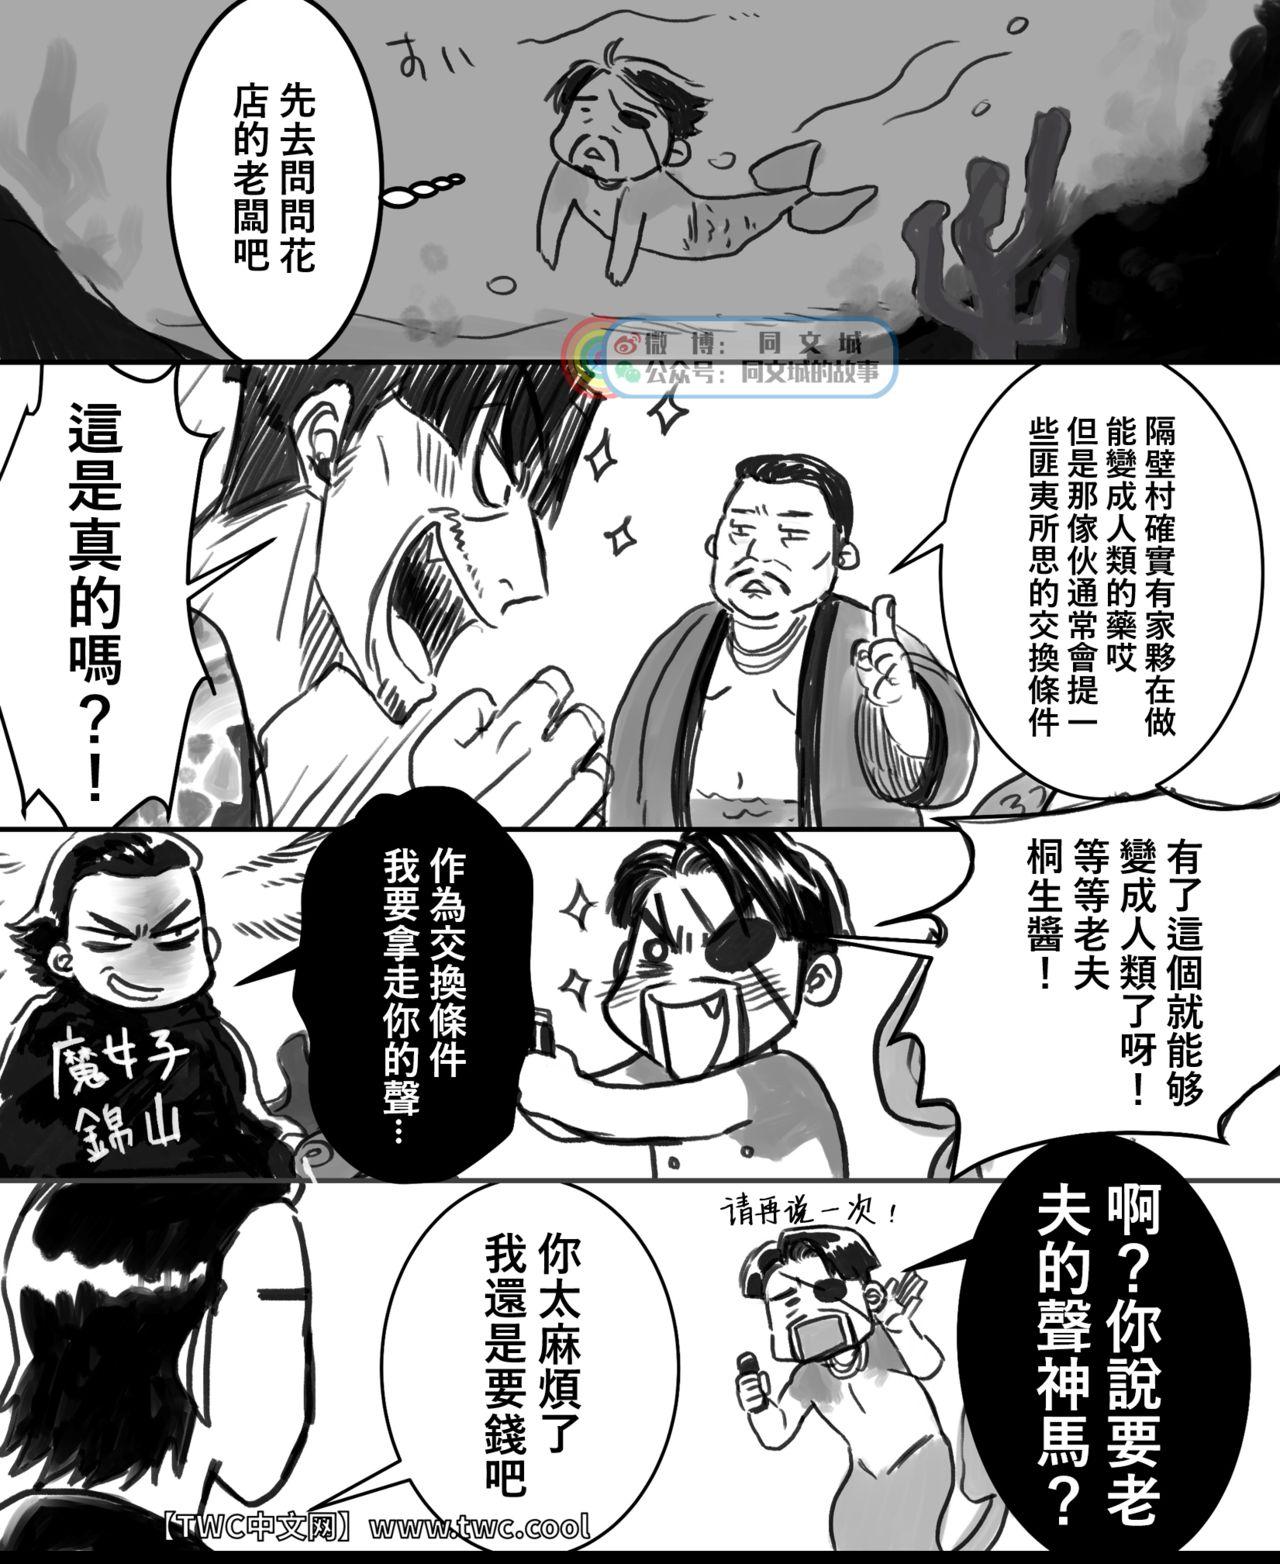 Best Blow Job Gokudou Ningyo Majima - Ryu ga gotoku | yakuza Massage - Page 3